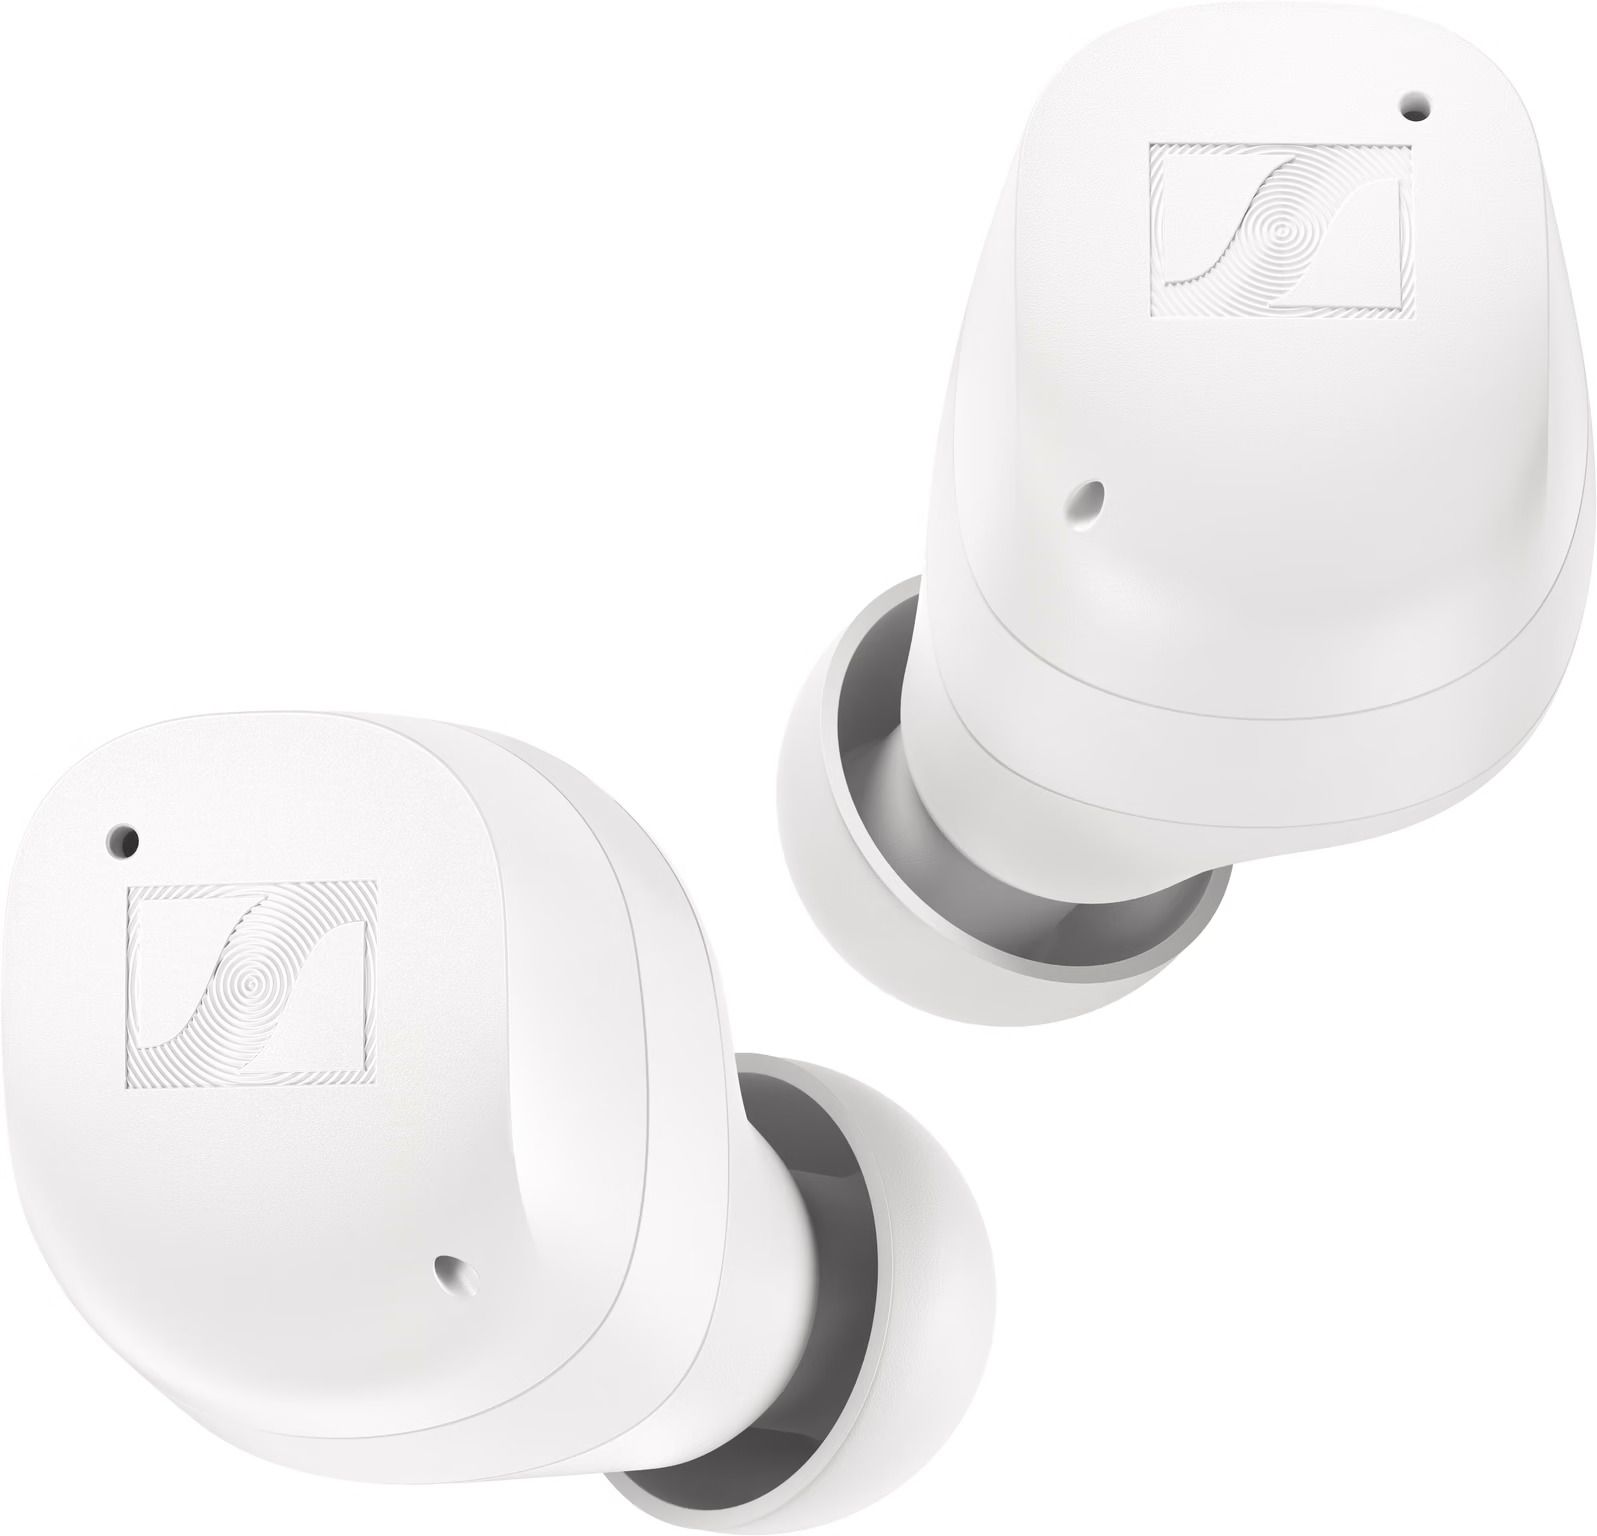 Sennheiser Momentum True Wireless 3 wit - In ear oordopjes